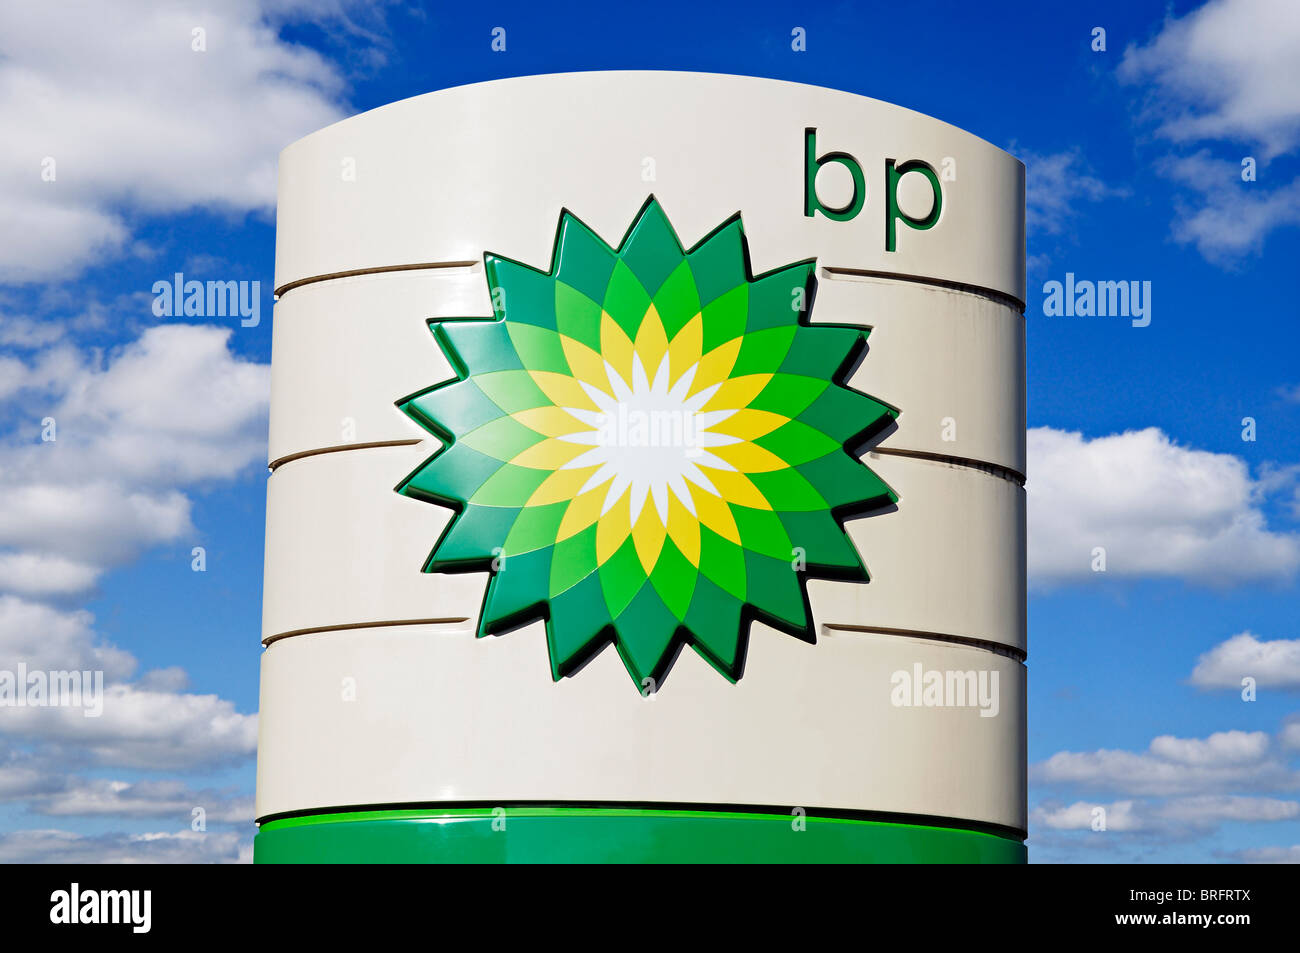 BP Sign, at a Petrol Station, UK. Stock Photo